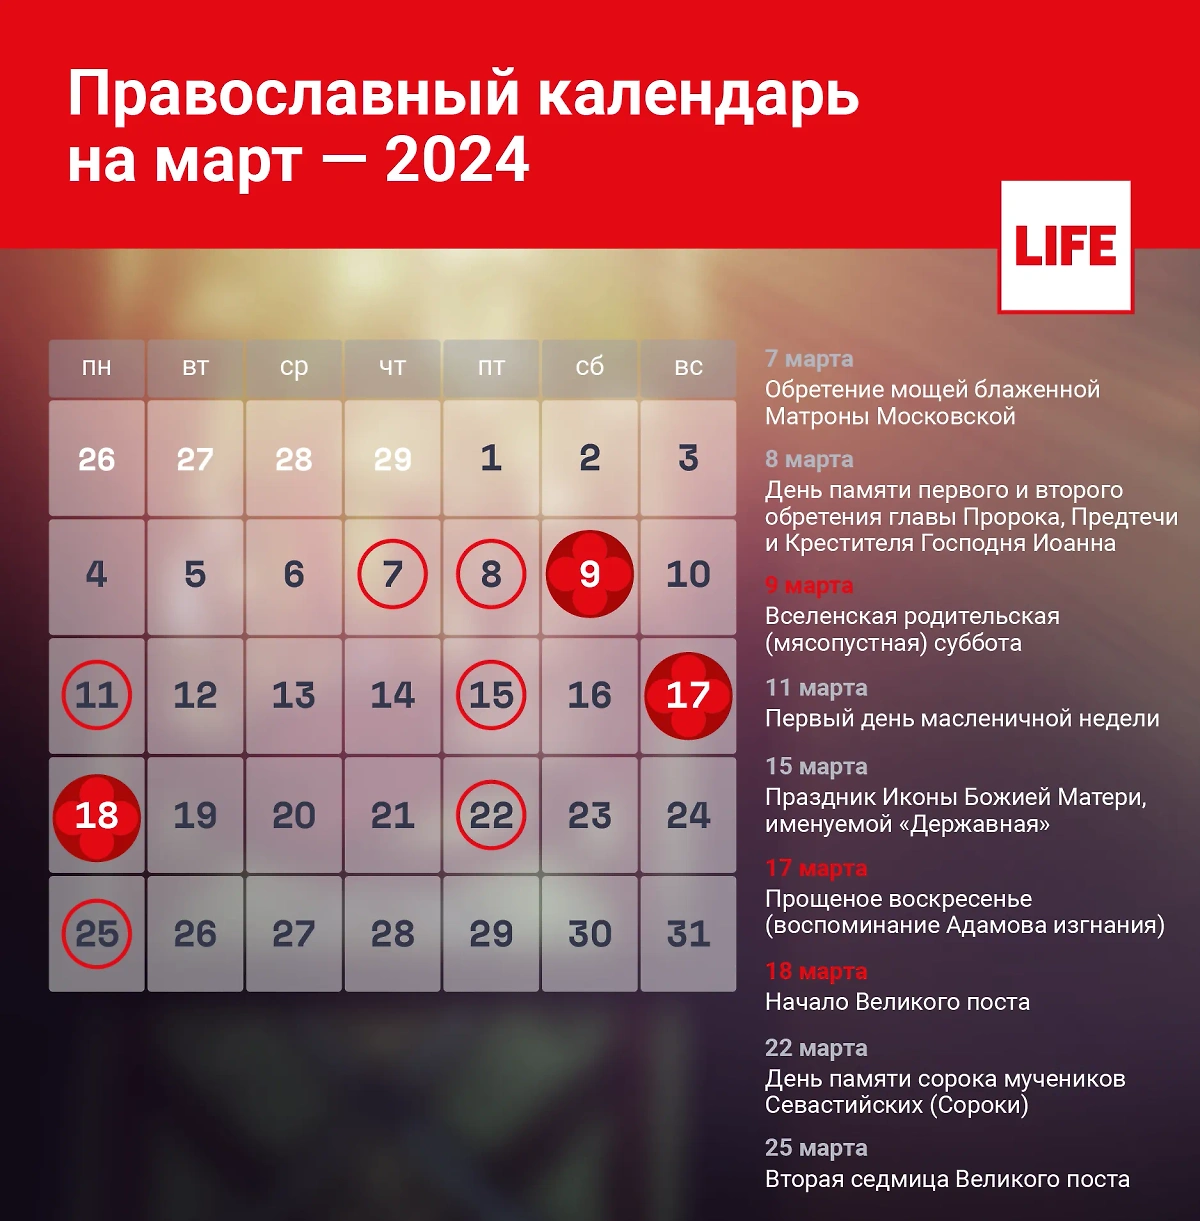 Церковный календарь на март 2024 года. Инфографика © Life.ru 